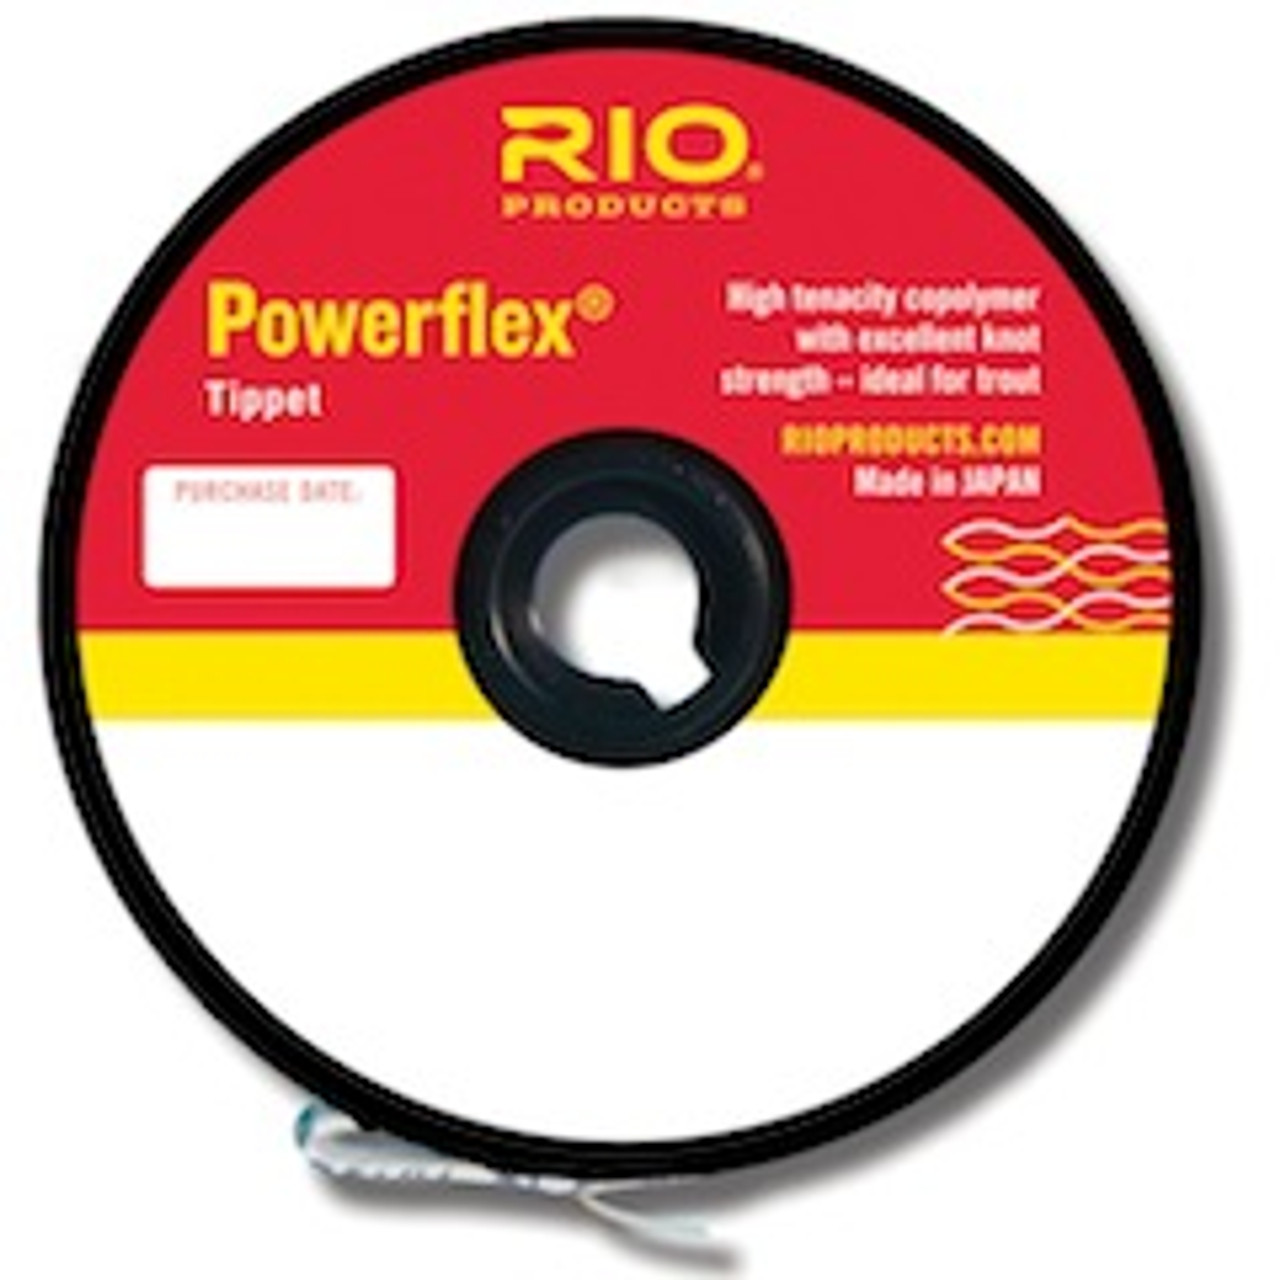 Rio Powerflex Tippet Material 30 yd. Spool - Fly Fishing - Ed's